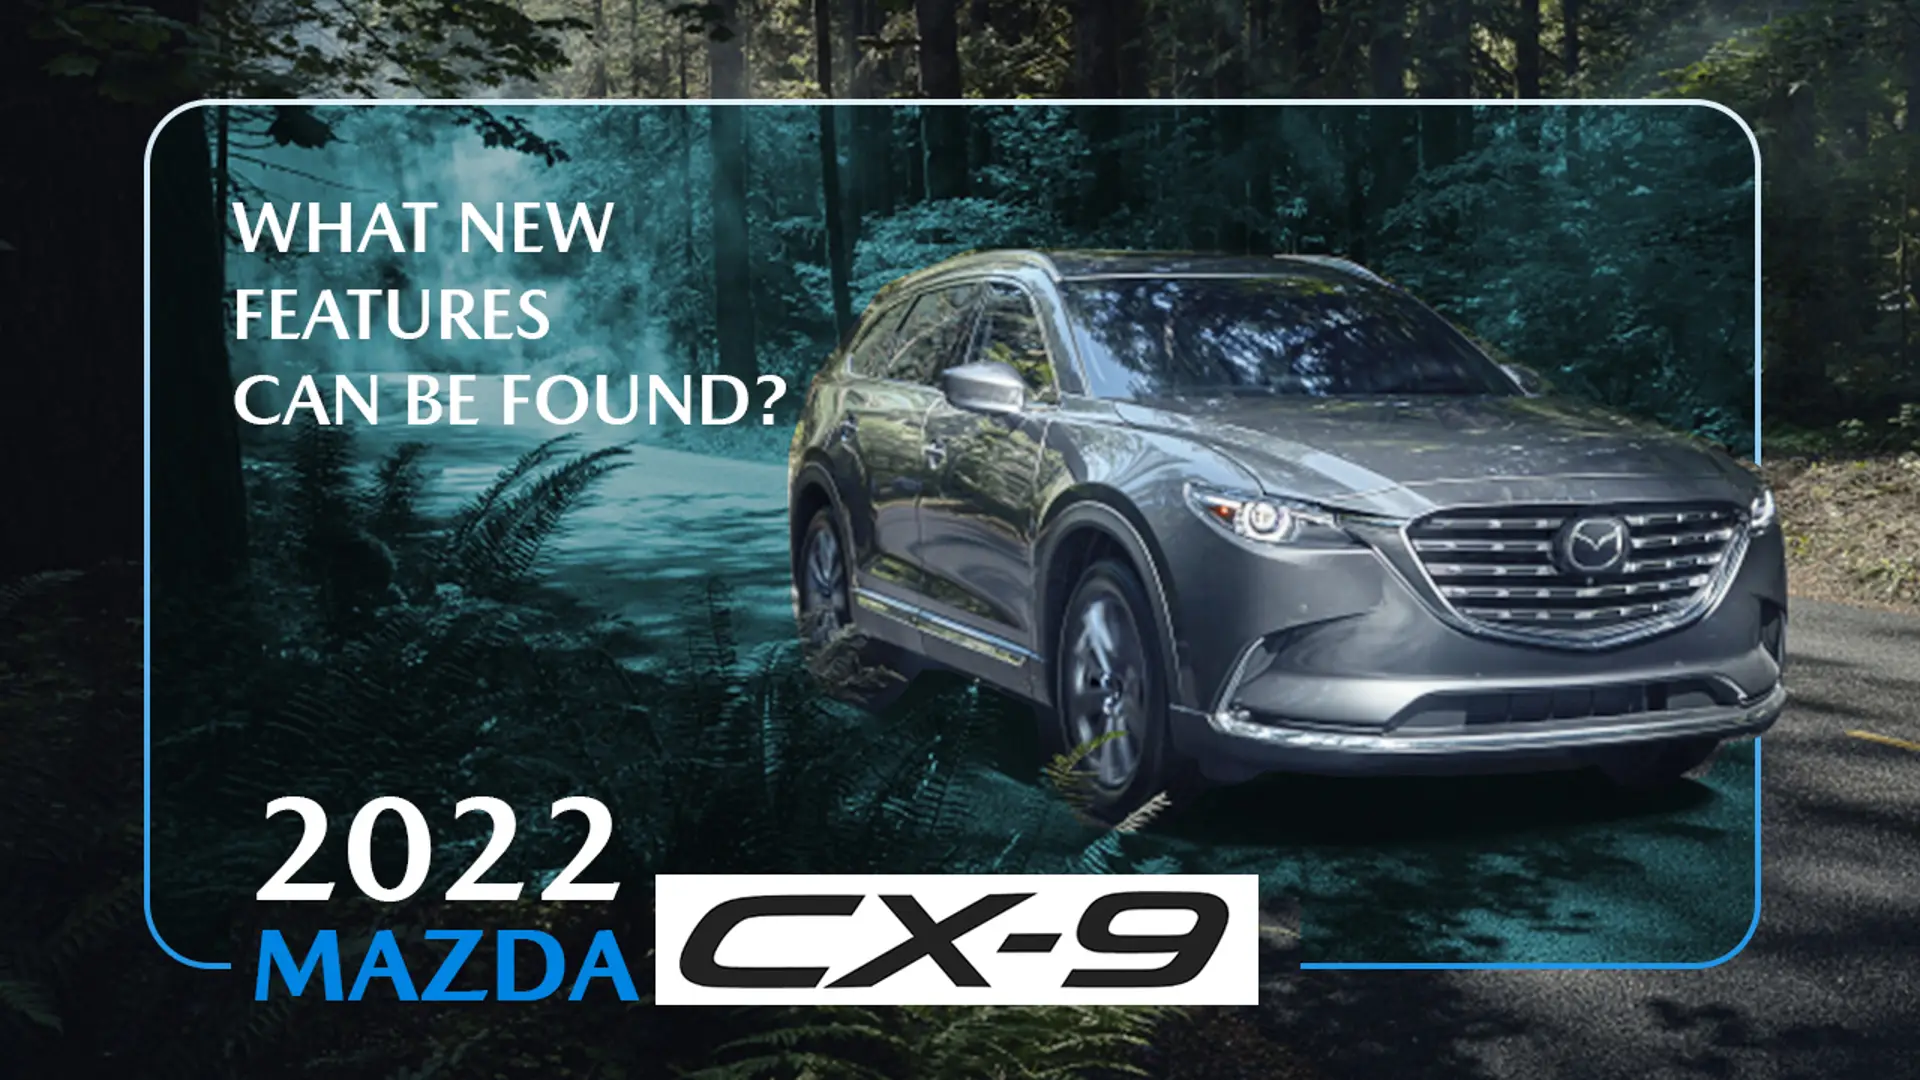 2022 Mazda CX-9's Updates Include ...